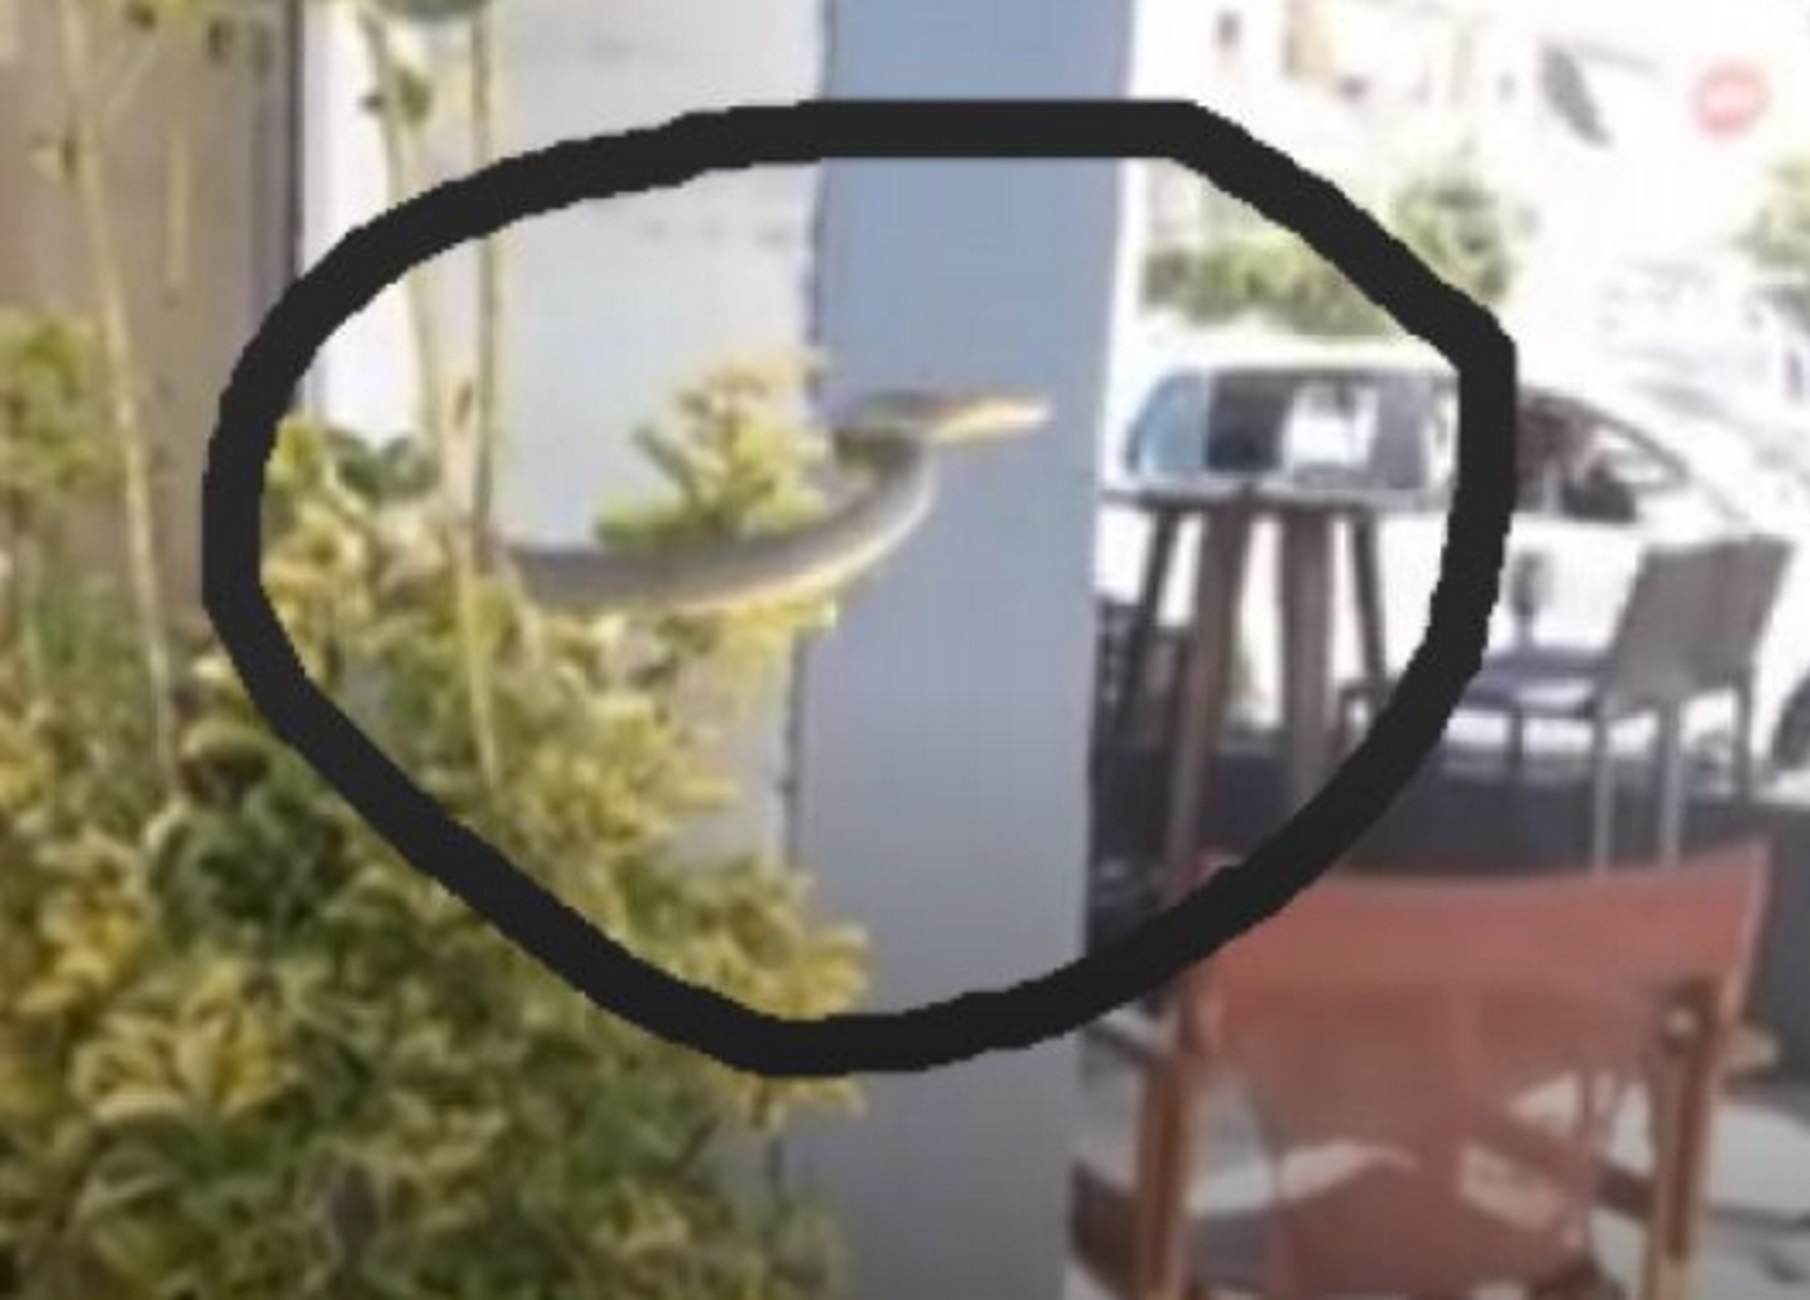 Σέρρες: Φίδι… πετάγεται μπροστά στους πελάτες καφετέριας και δευτερόλεπτα πανικού! video